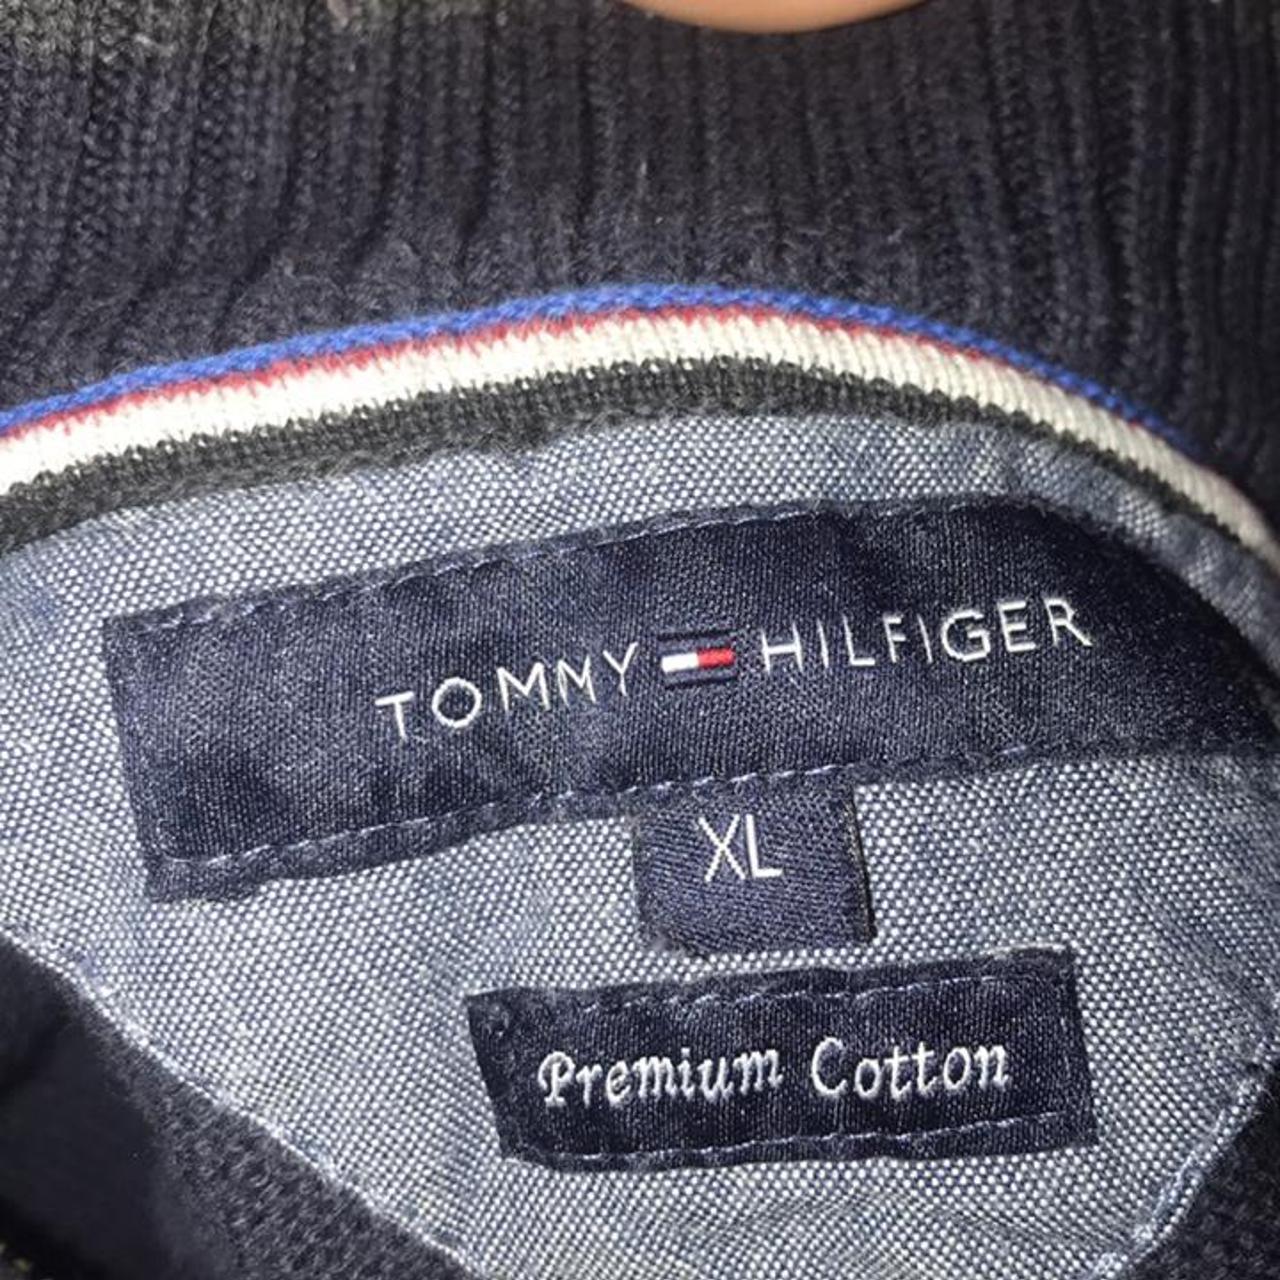 Vintage navy Tommy Hilfiger half zip up jumper /... - Depop